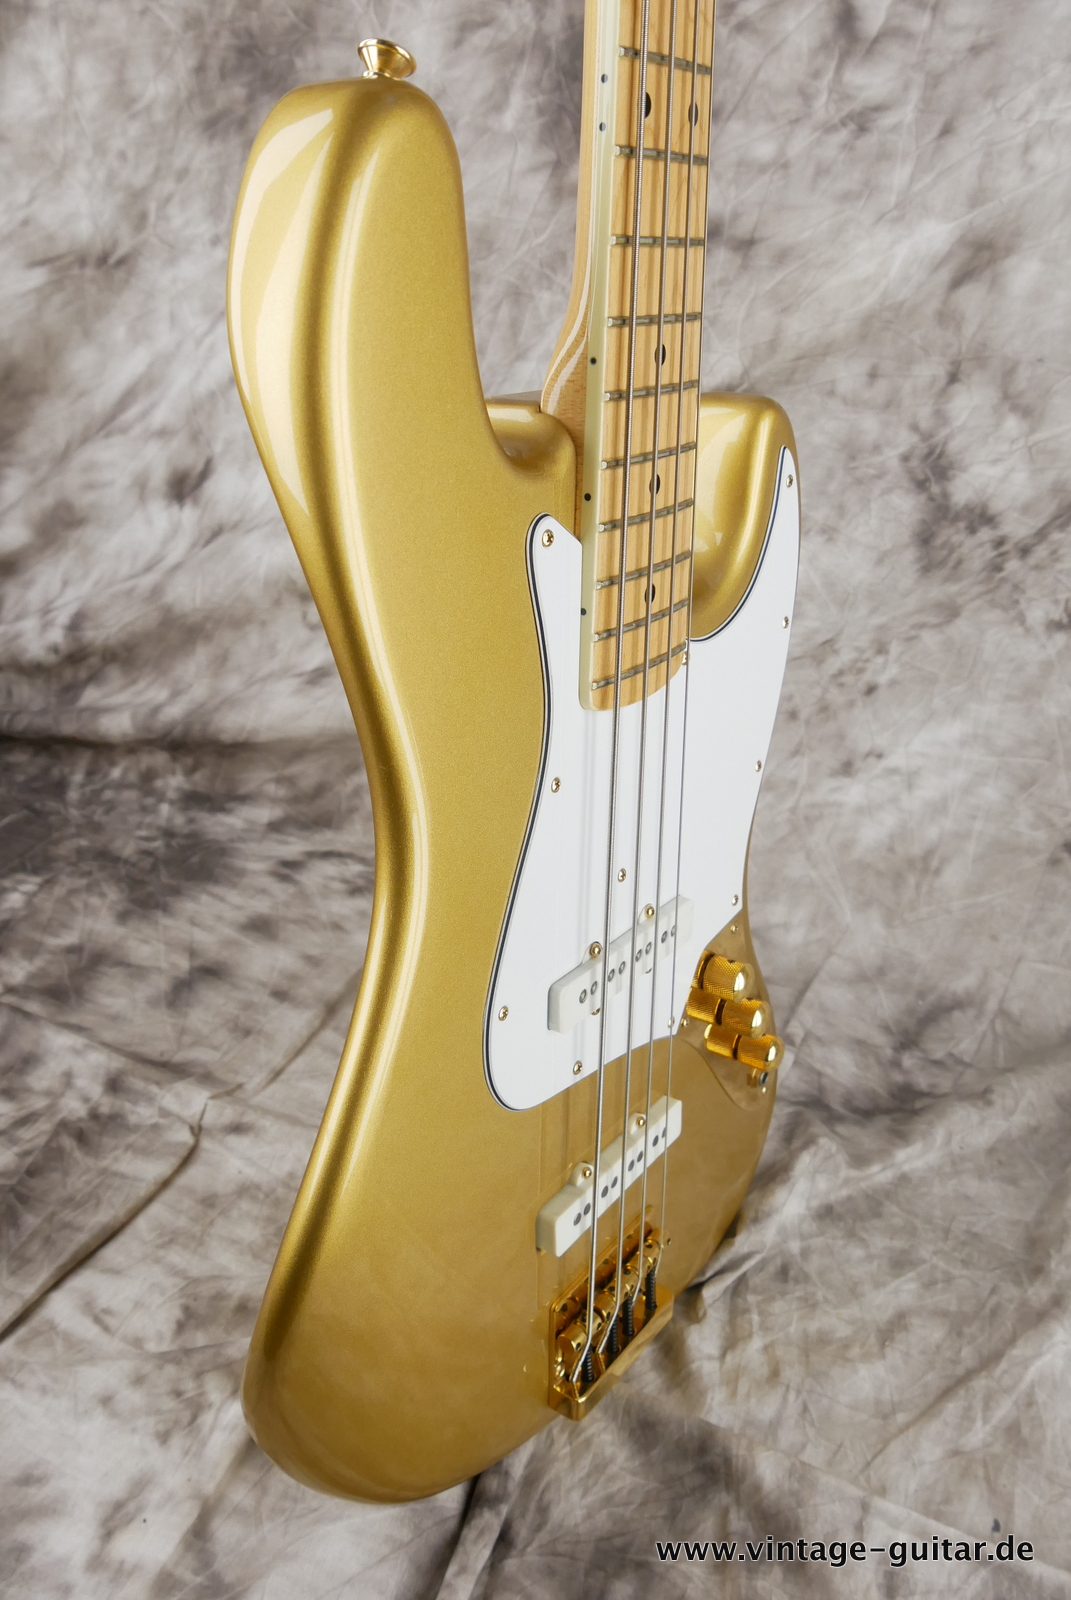 Fender_Jazz_Bass_collectors_series_USA_gold_metallic_1982-005.JPG